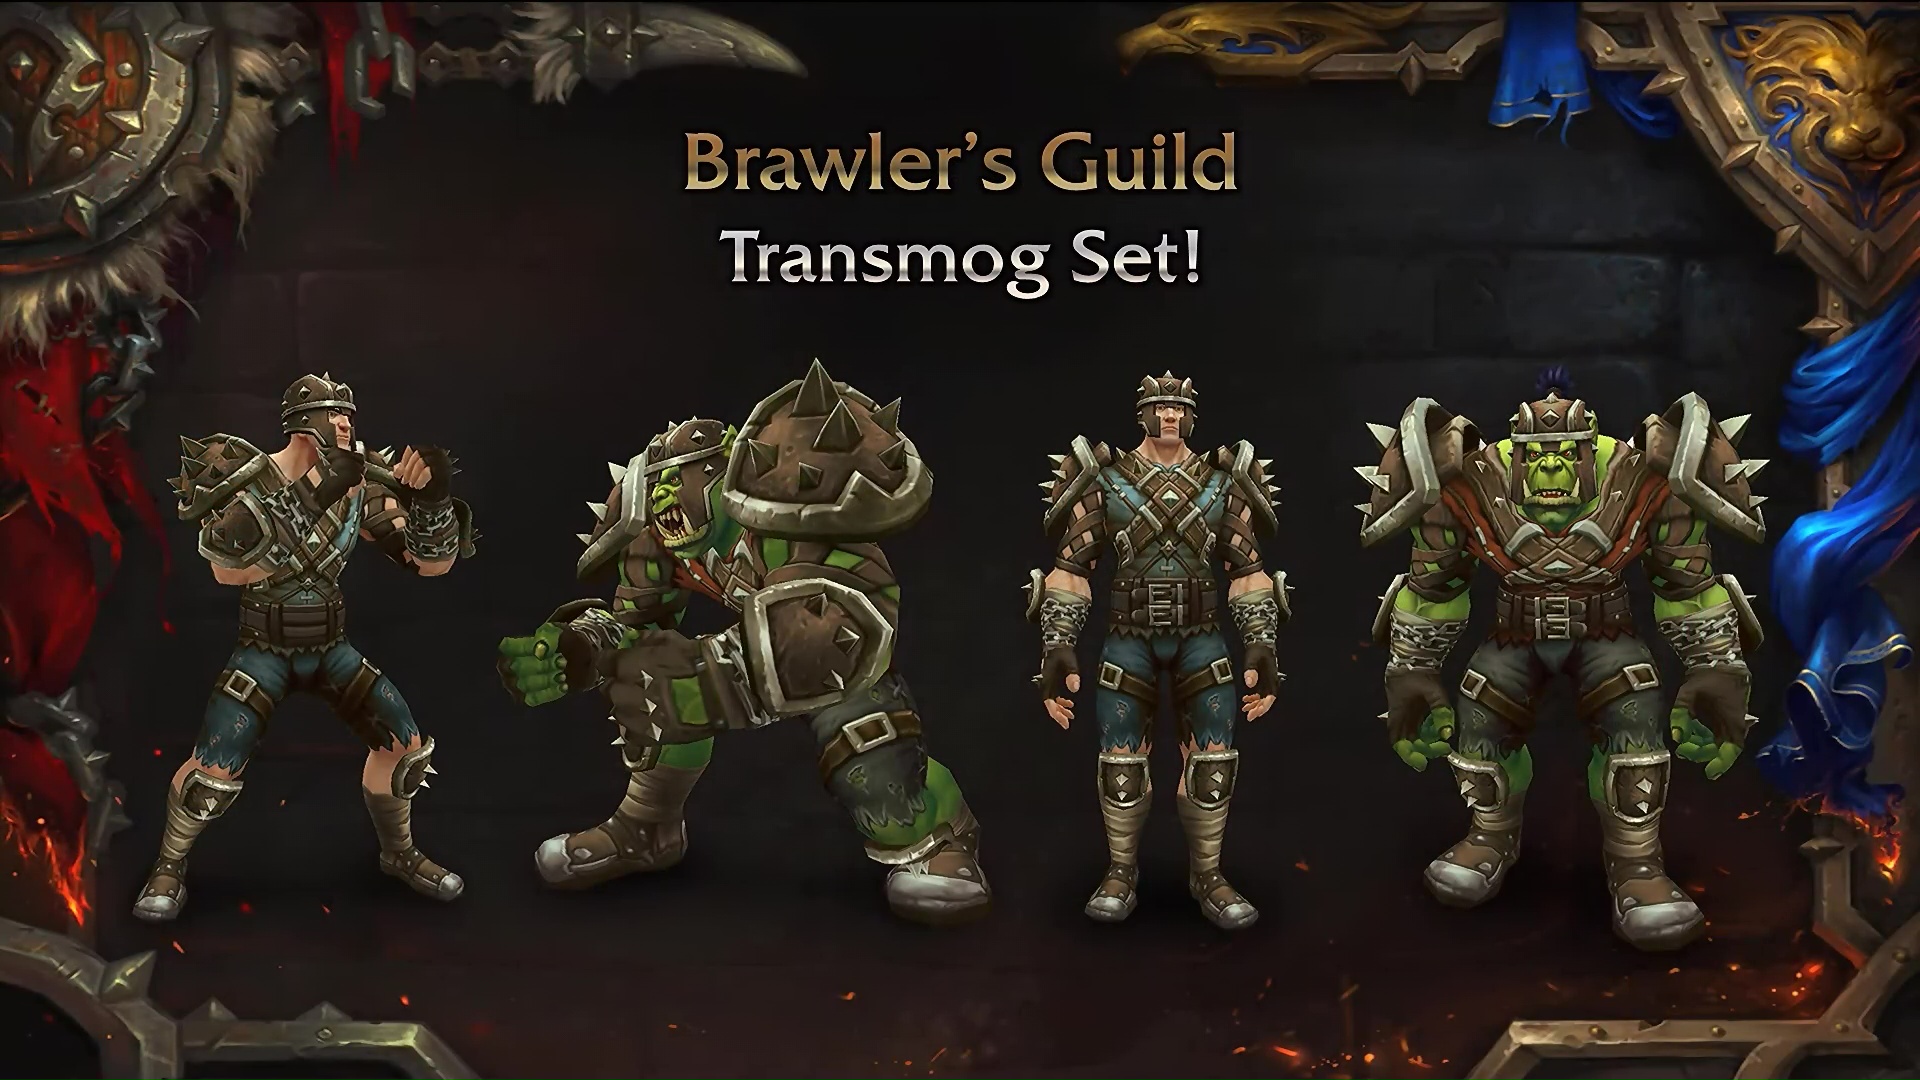 Brawler's Guild transmog set